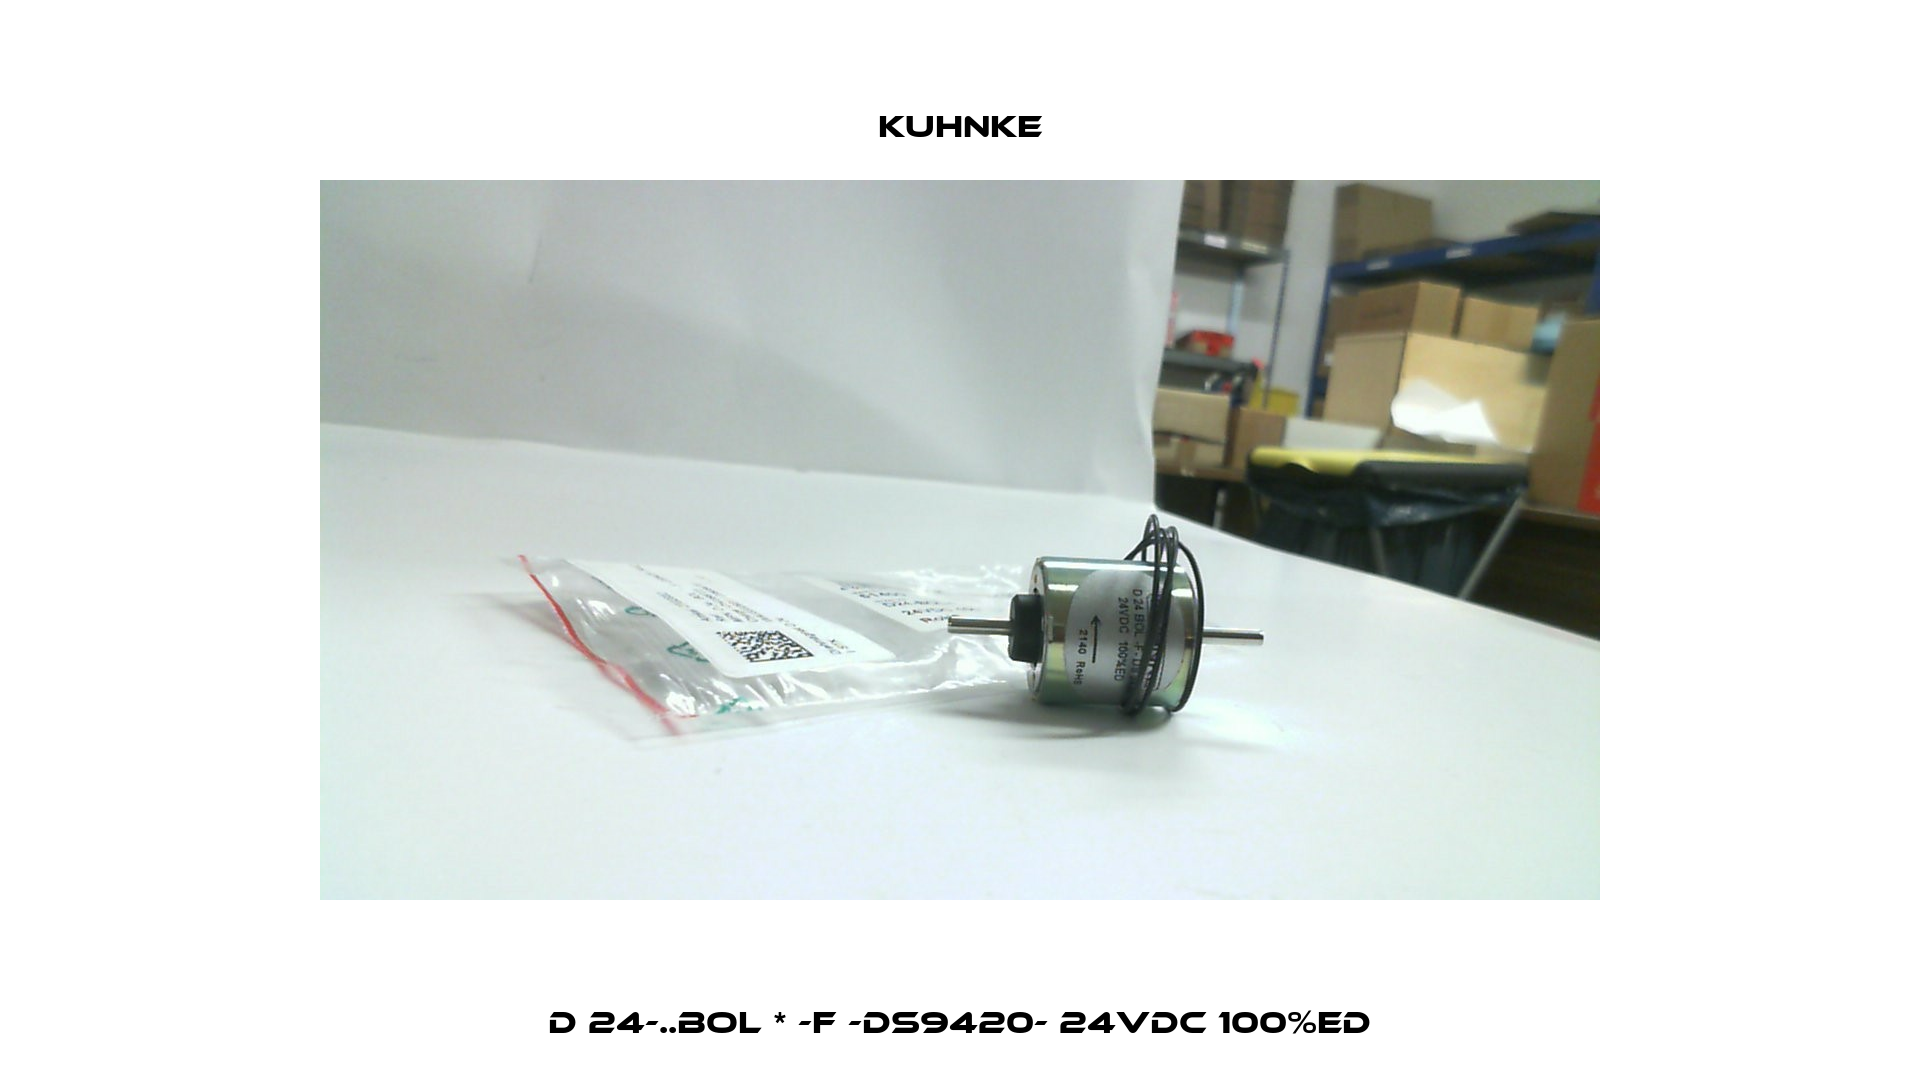 D 24-..BOL * -F -DS9420- 24VDC 100%ED Kuhnke